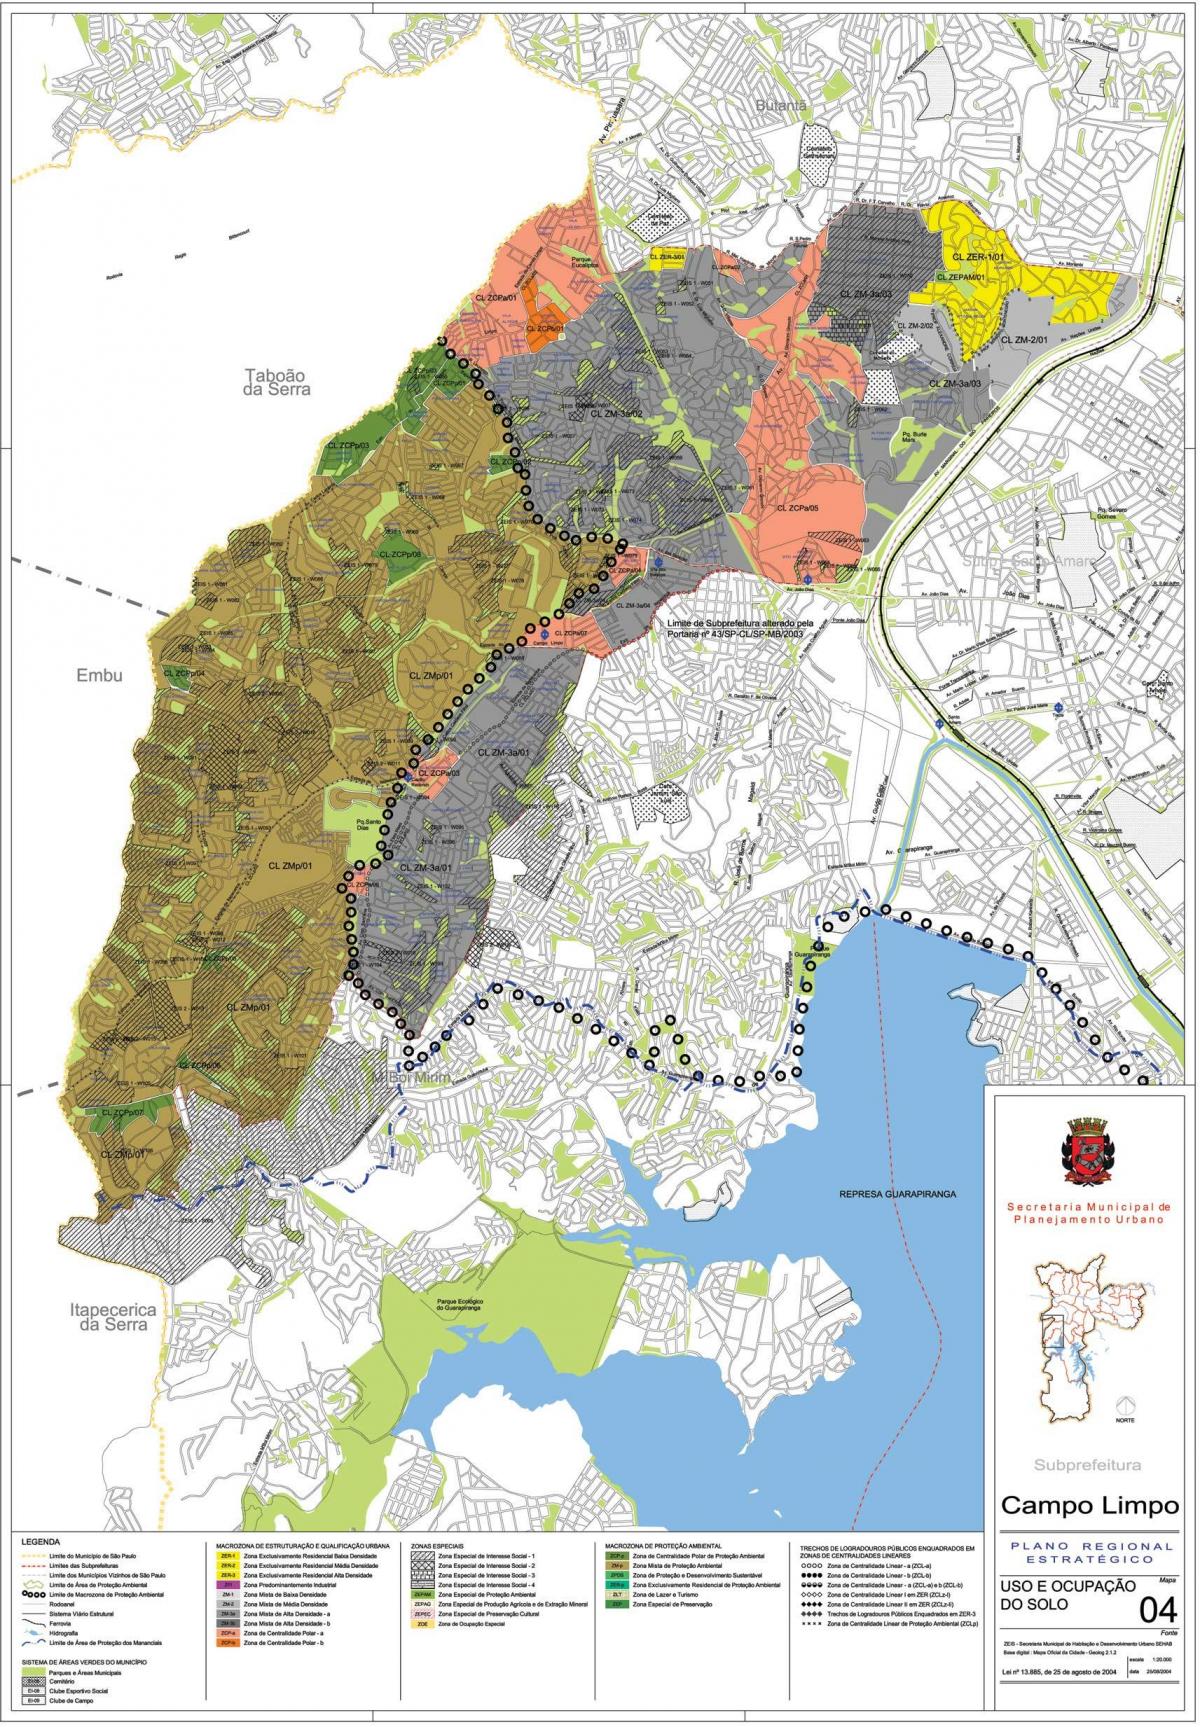 Карта Кампу-Лимпу-Сан-Паулу - захват земли